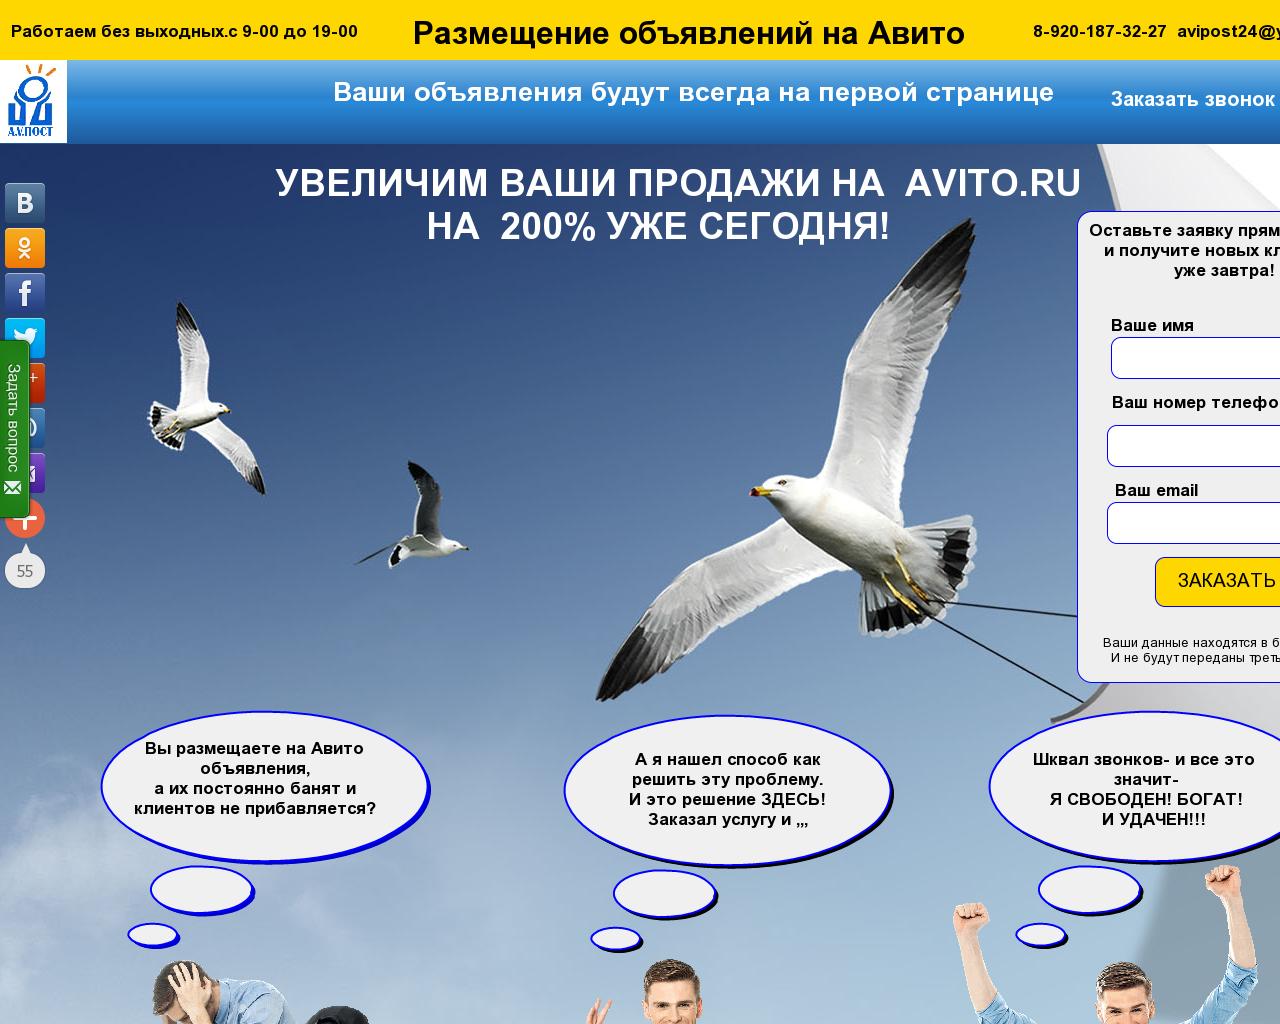 Изображение сайта avipost24.ru в разрешении 1280x1024